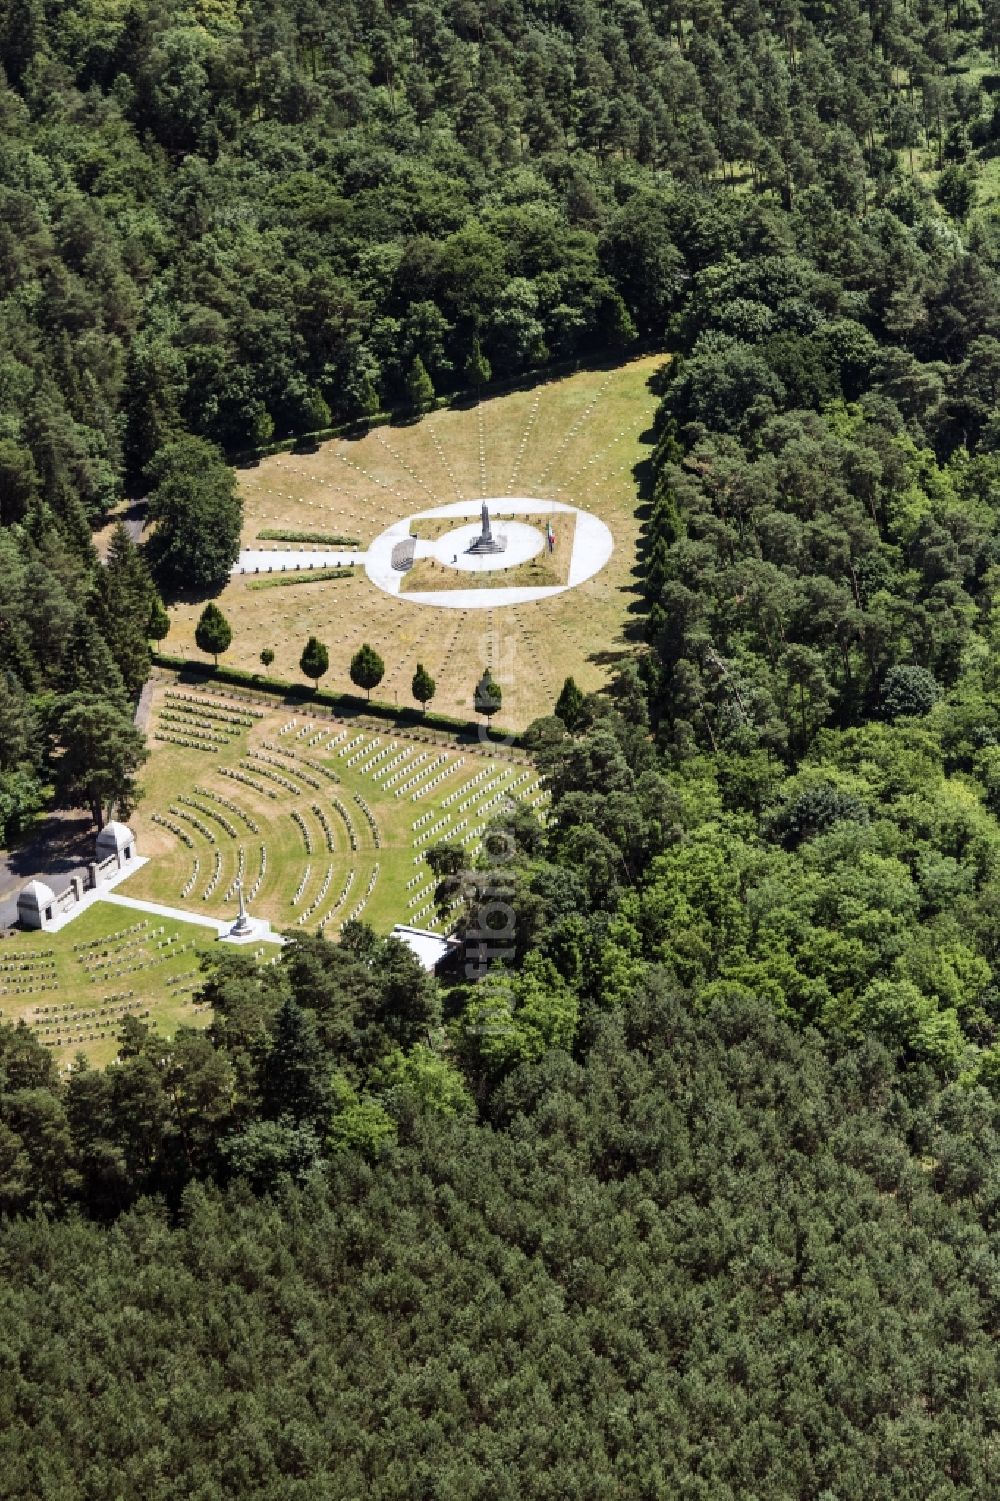 Luftbild Stahnsdorf - Grabreihen auf dem Gelände des Friedhofes Südwestkirchhof Stahnsdorf in Stahnsdorf im Bundesland Brandenburg, Deutschland